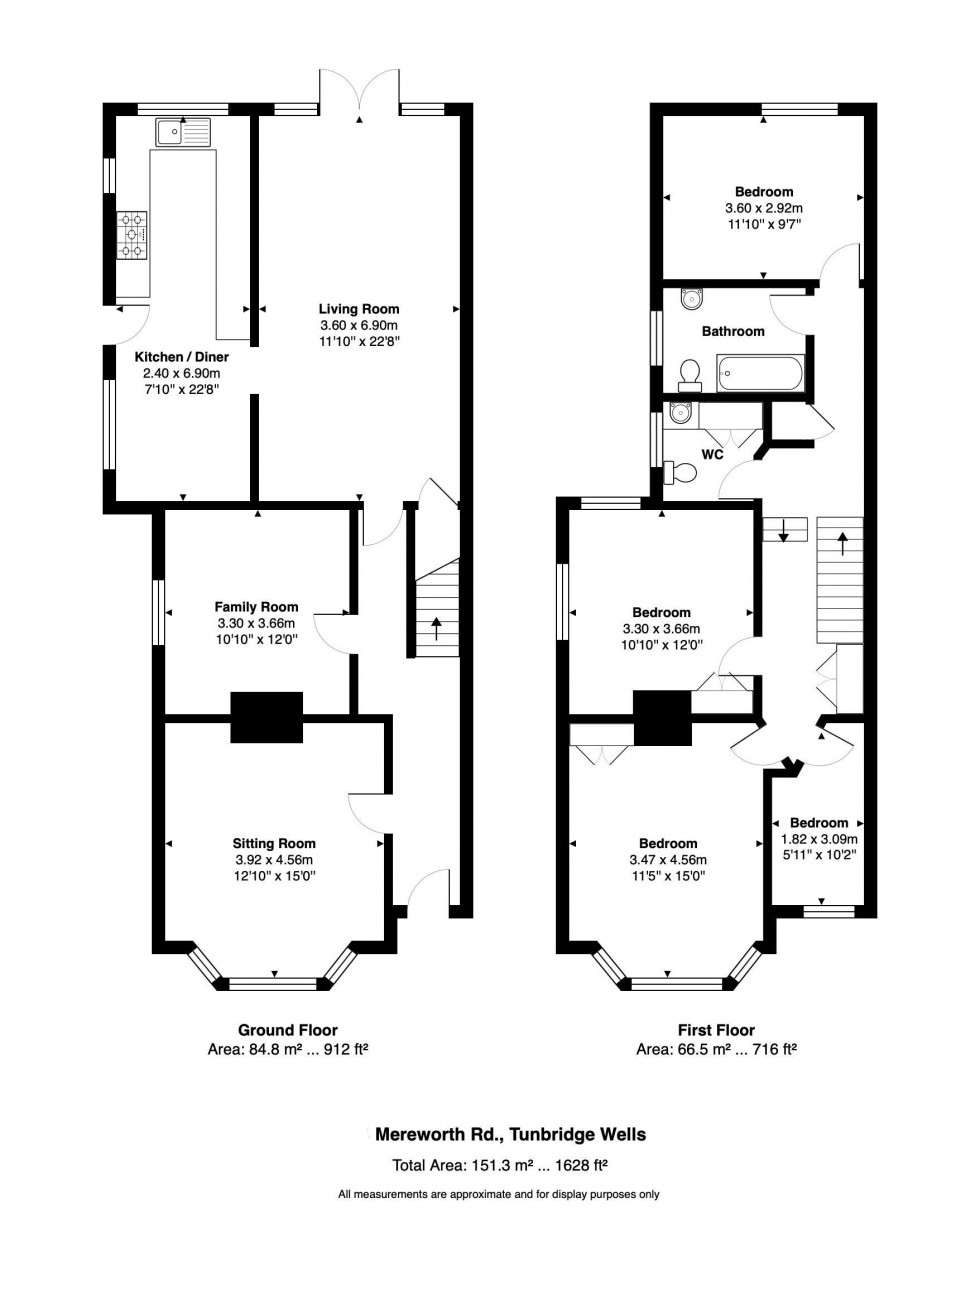 Floorplan for 4 Bedroom Semi-Detached House with Enclosed Garden & Garage, Mereworth Road, Tunbridge Wells